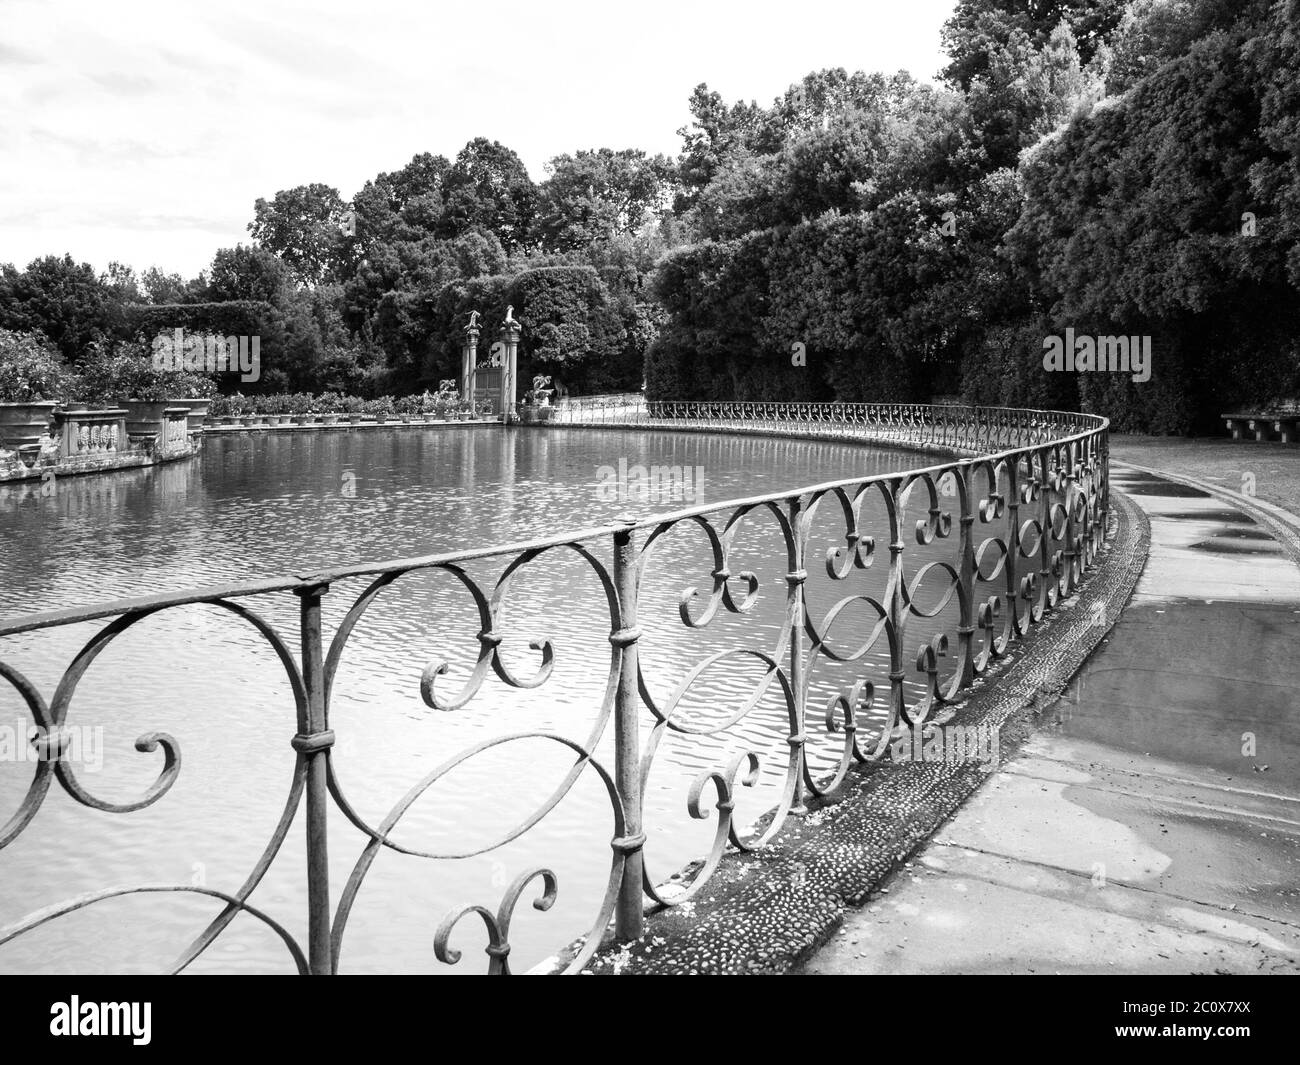 Park See in Boboli Gardens, Florenz, Italien. Schwarzweiß-Bild. Stockfoto